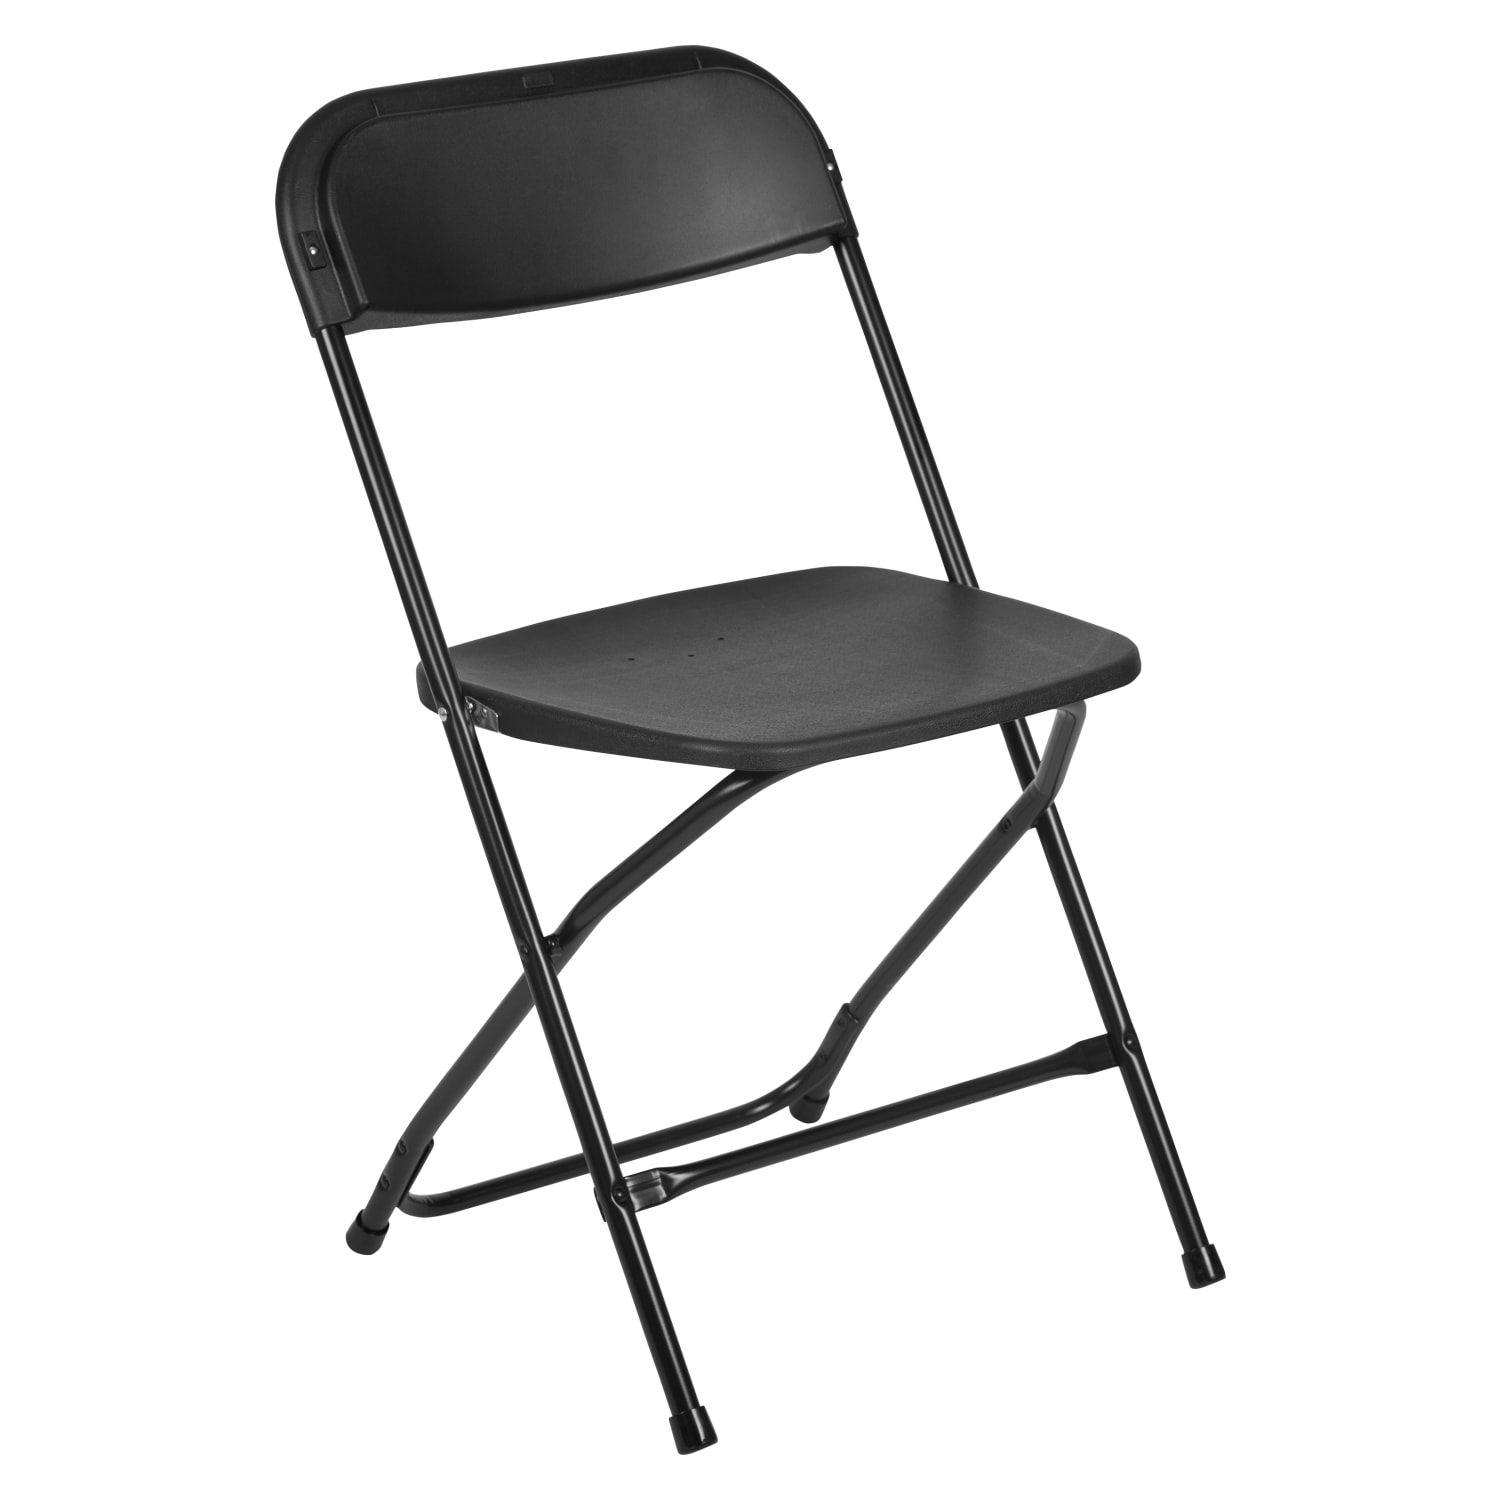 Hercules Series Plastic Folding Chair - Black - 650LB Weight Capacity Comfortable Event Chair - Lightweight Folding Chair